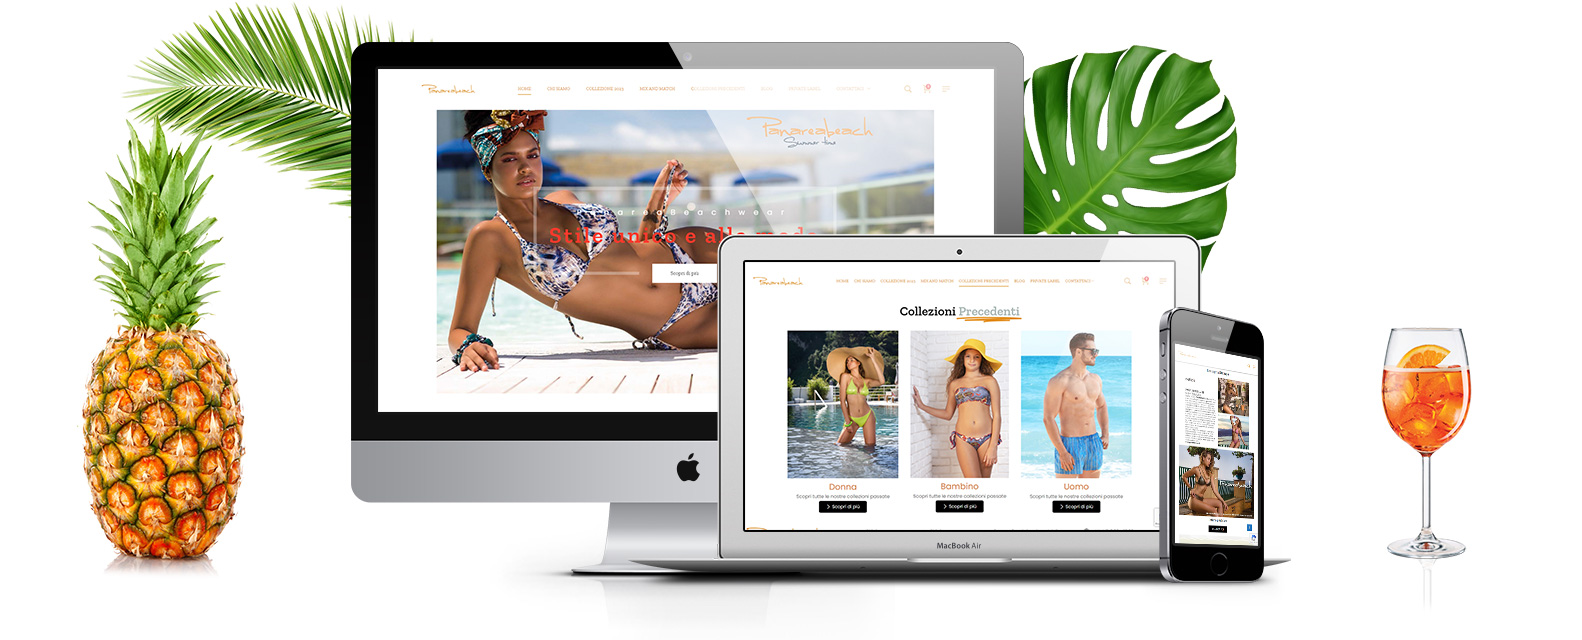 panarea realizzazione ecommerce restyling costumi bikini moda mare - Sito web costumi da mare, produzione artigianale Panarea Beachwear - Web Agency Napoli Flashex